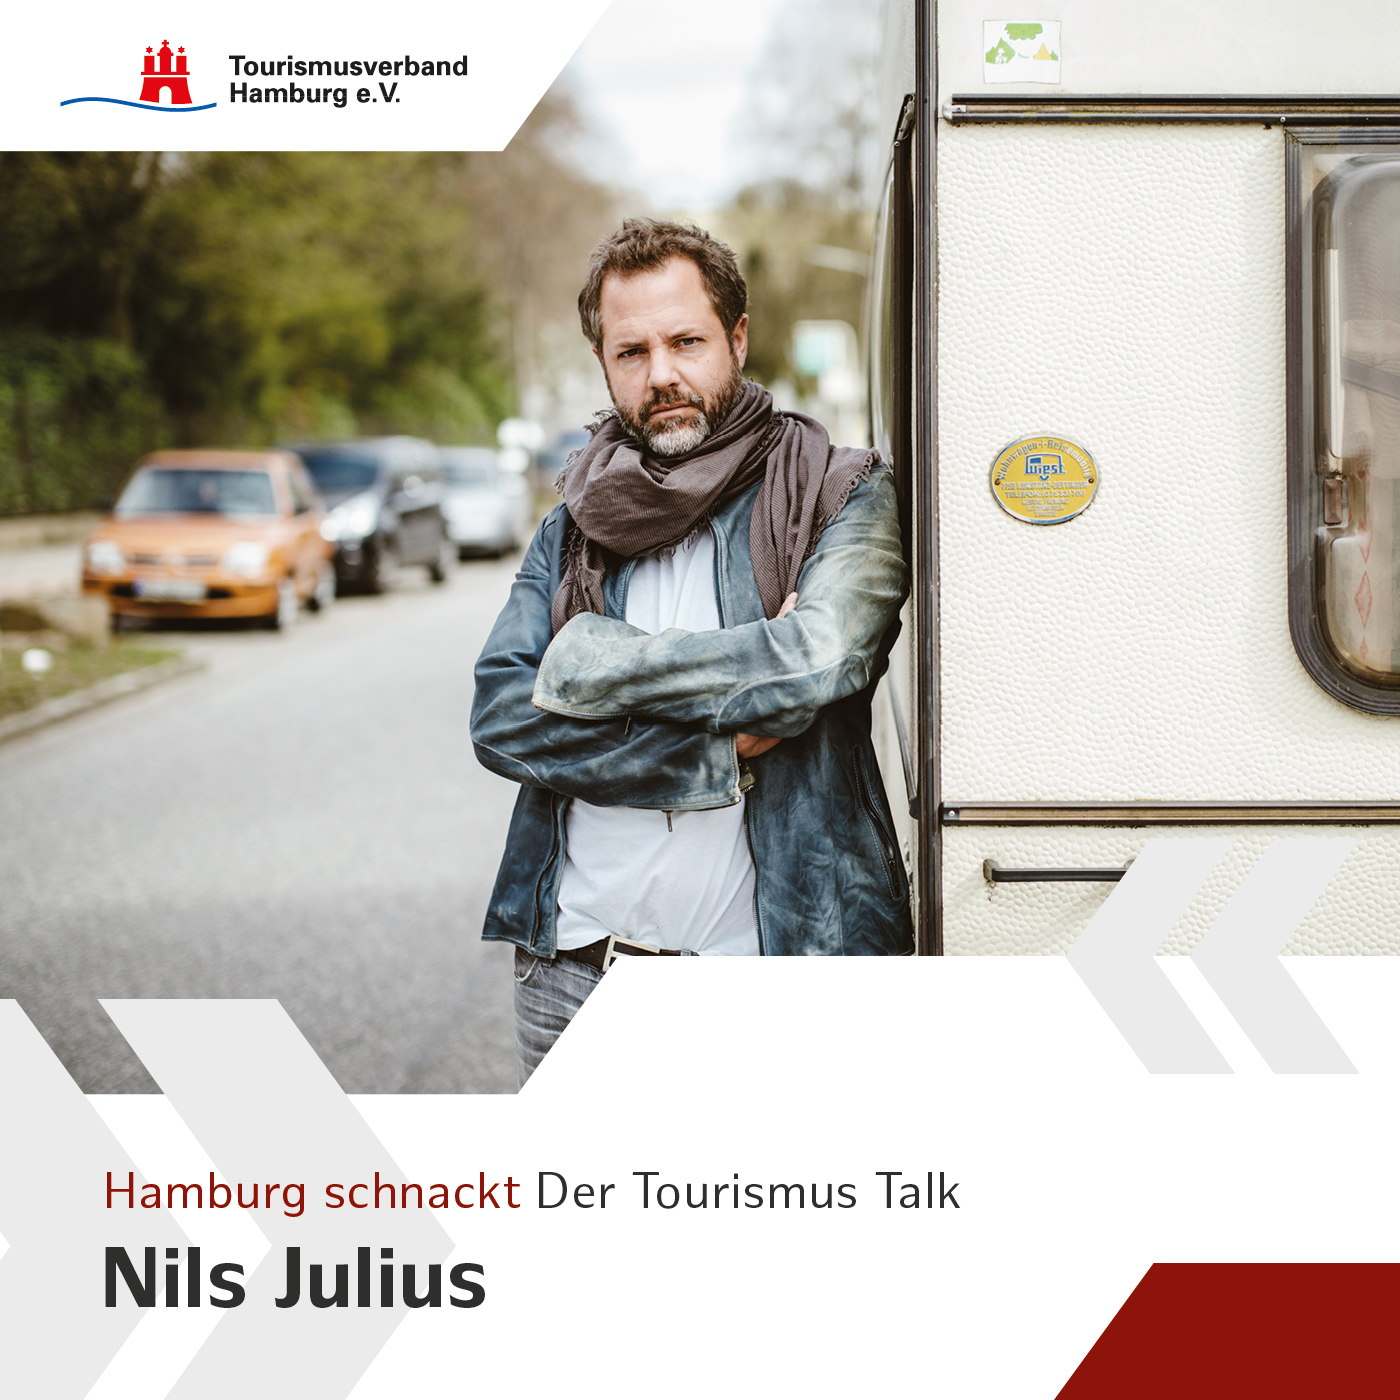 Hamburg schnackt mit Nils Julius